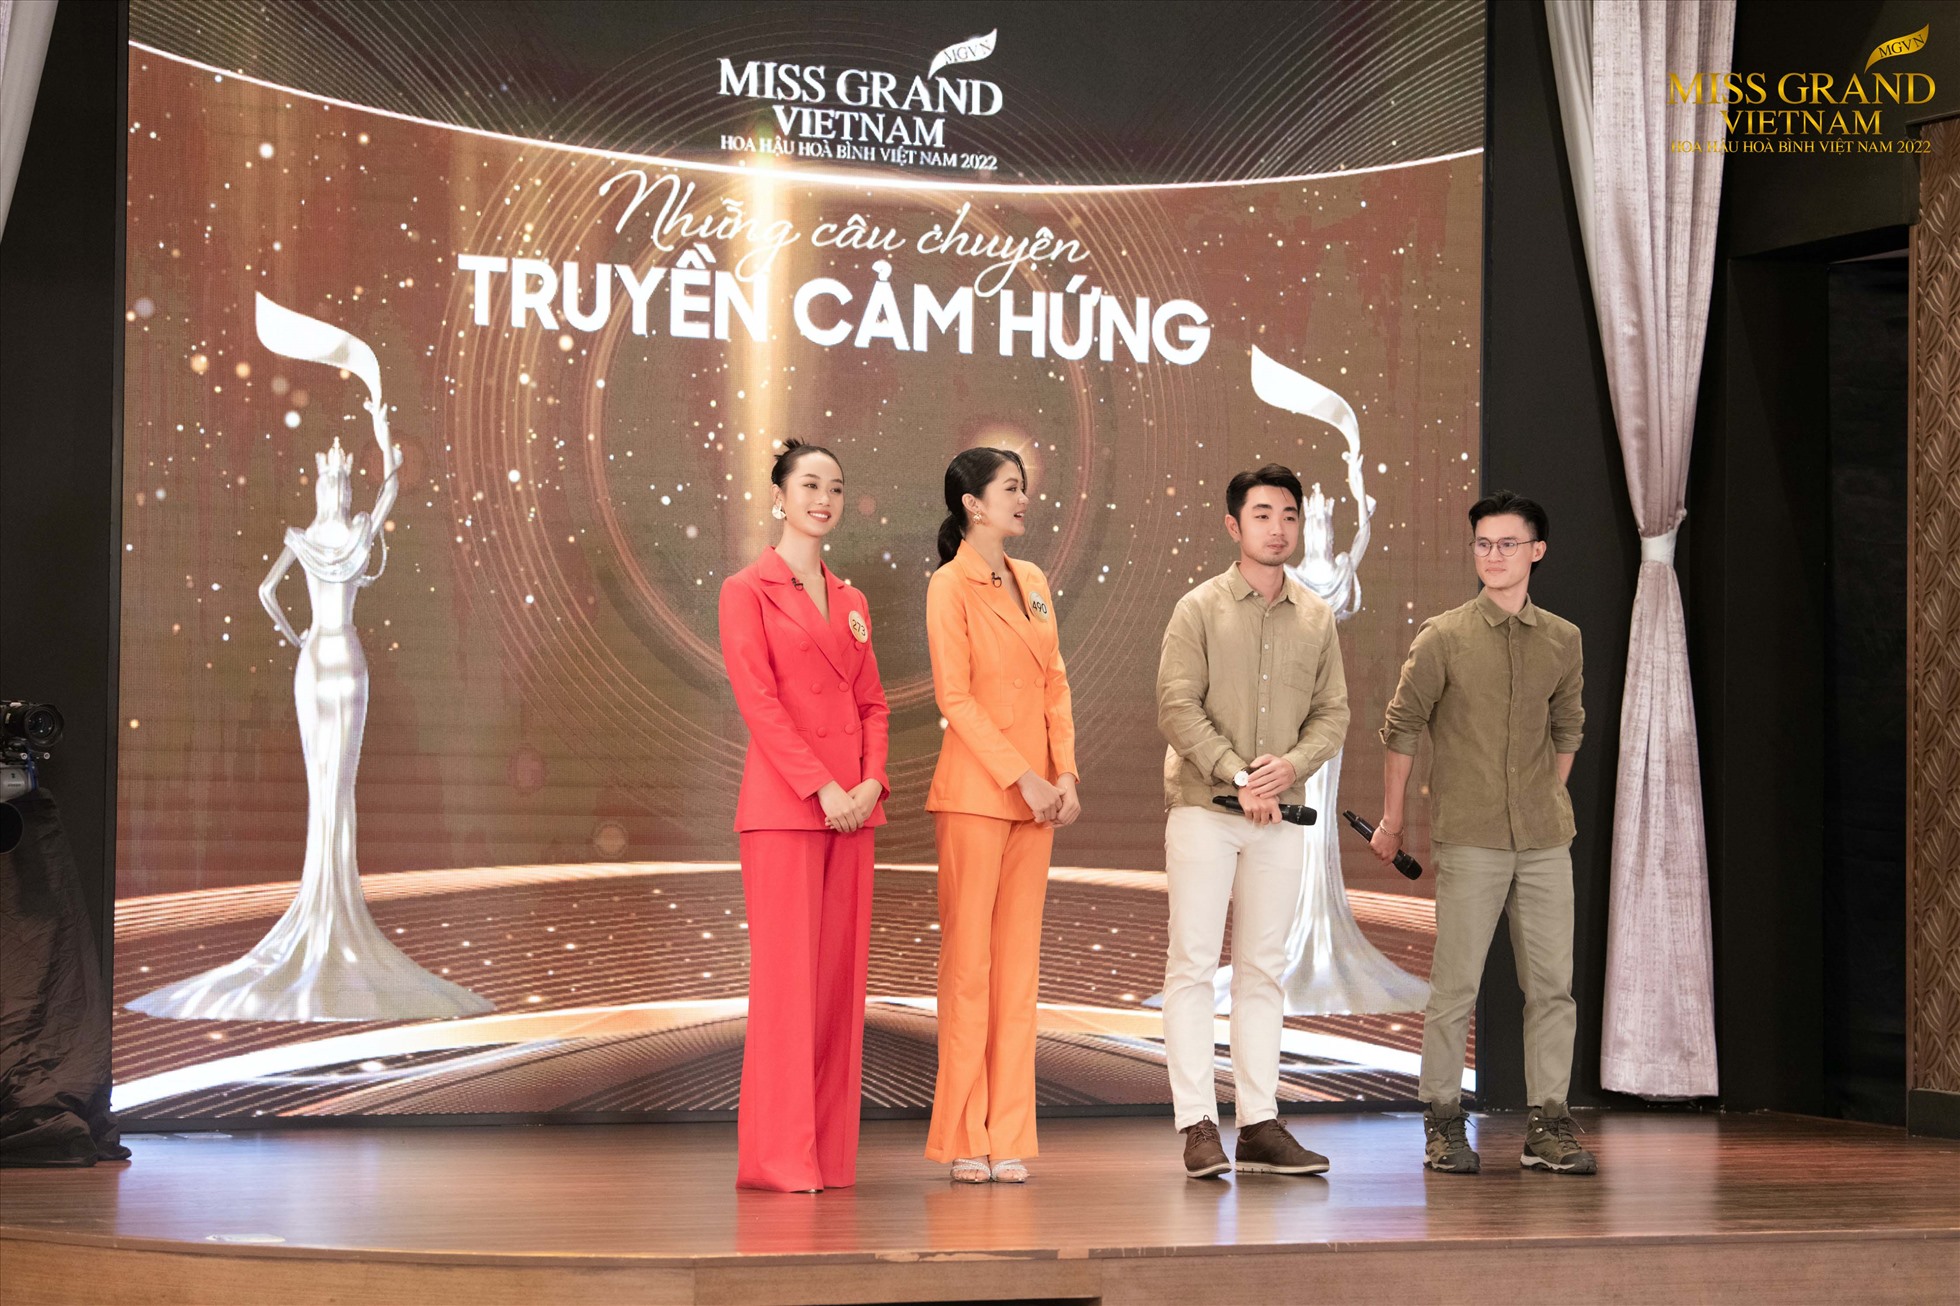 Ở câu chuyện truyền cảm hứng của cuộc thi Miss Grand Vietnam 2022 (Hoa hậu Hòa bình Việt Nam) đang được diễn ra, hai thí sinh của cuộc thi đã kể về một hành trình đầy màu xanh ý nghĩa của 2 chàng trai trong chuyến đi trồng cây khắp 63 tỉnh thành nước Việt Nam.